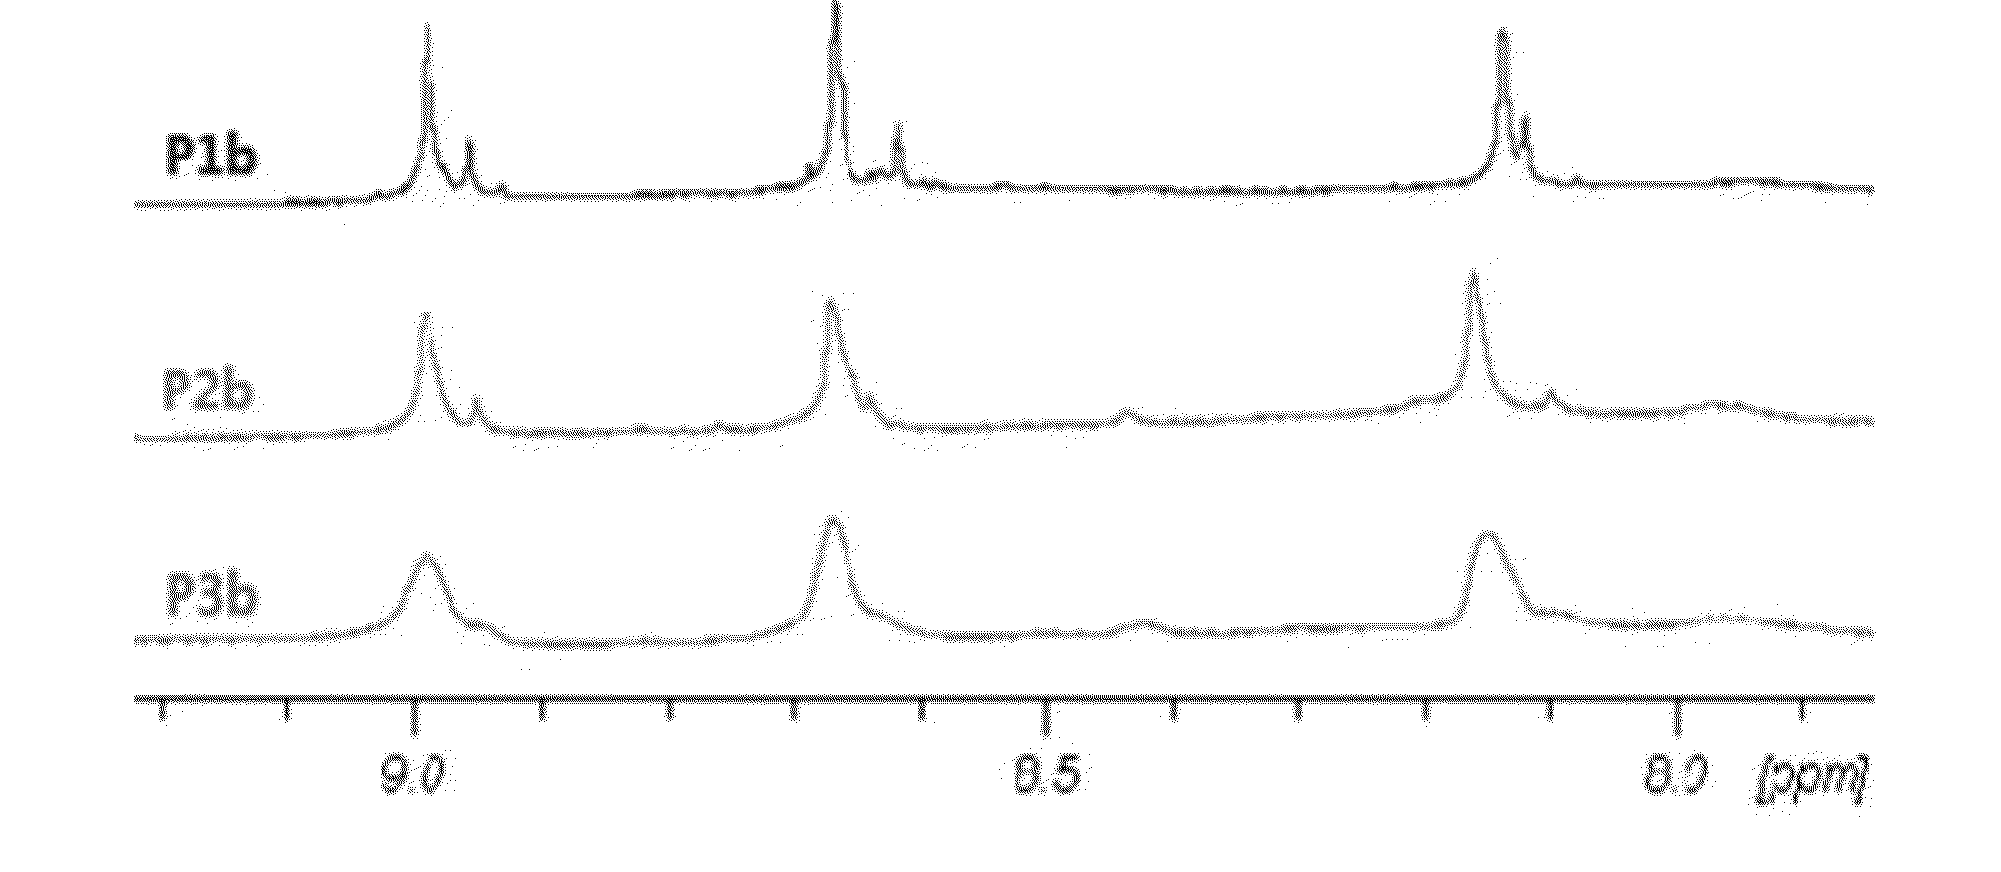 Regioregular pyridal[2,1,3]thiadiazole pi-conjugated copolymers for organic semiconductors